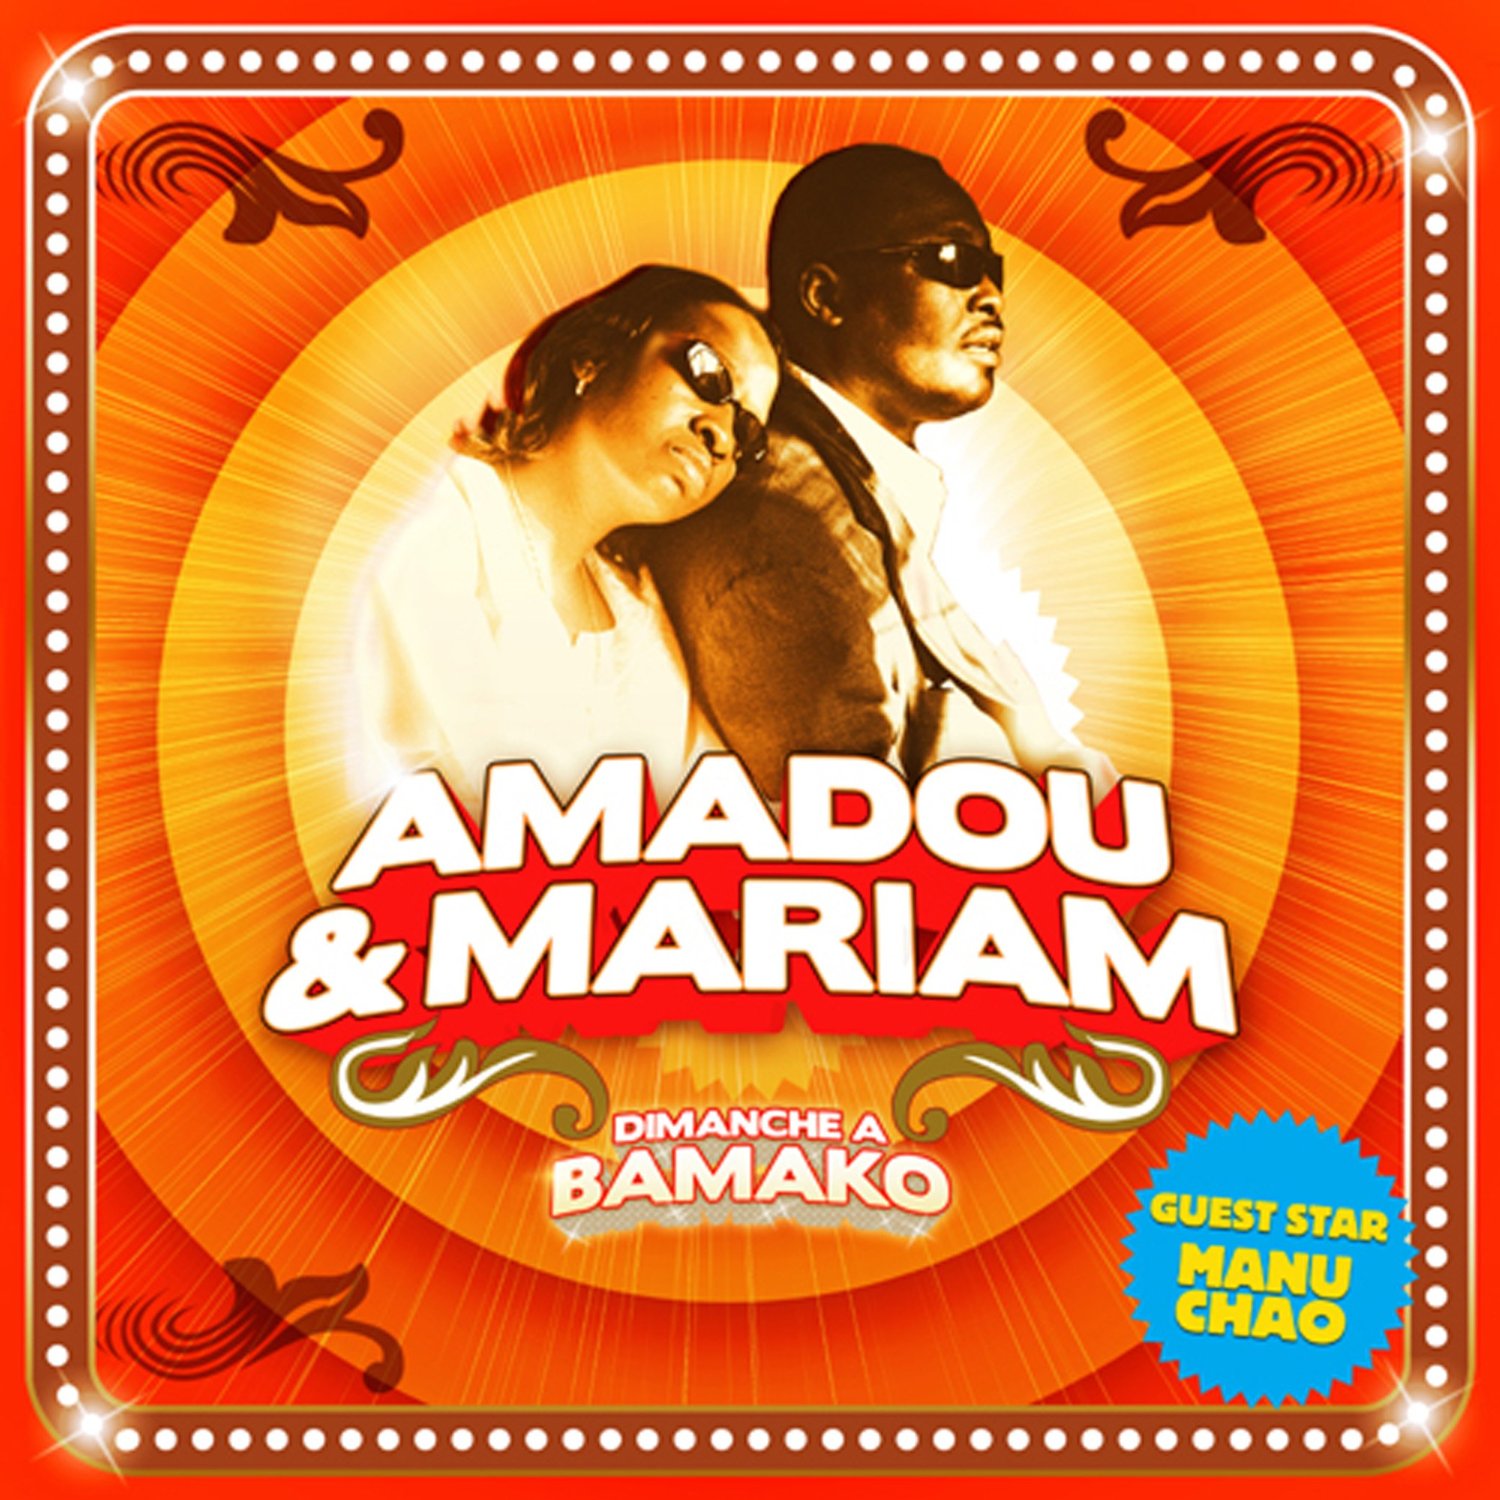 Vinile Amadou & Mariam - Dimanche A Bamako (3 Lp) NUOVO SIGILLATO, EDIZIONE DEL 09/10/2015 SUBITO DISPONIBILE